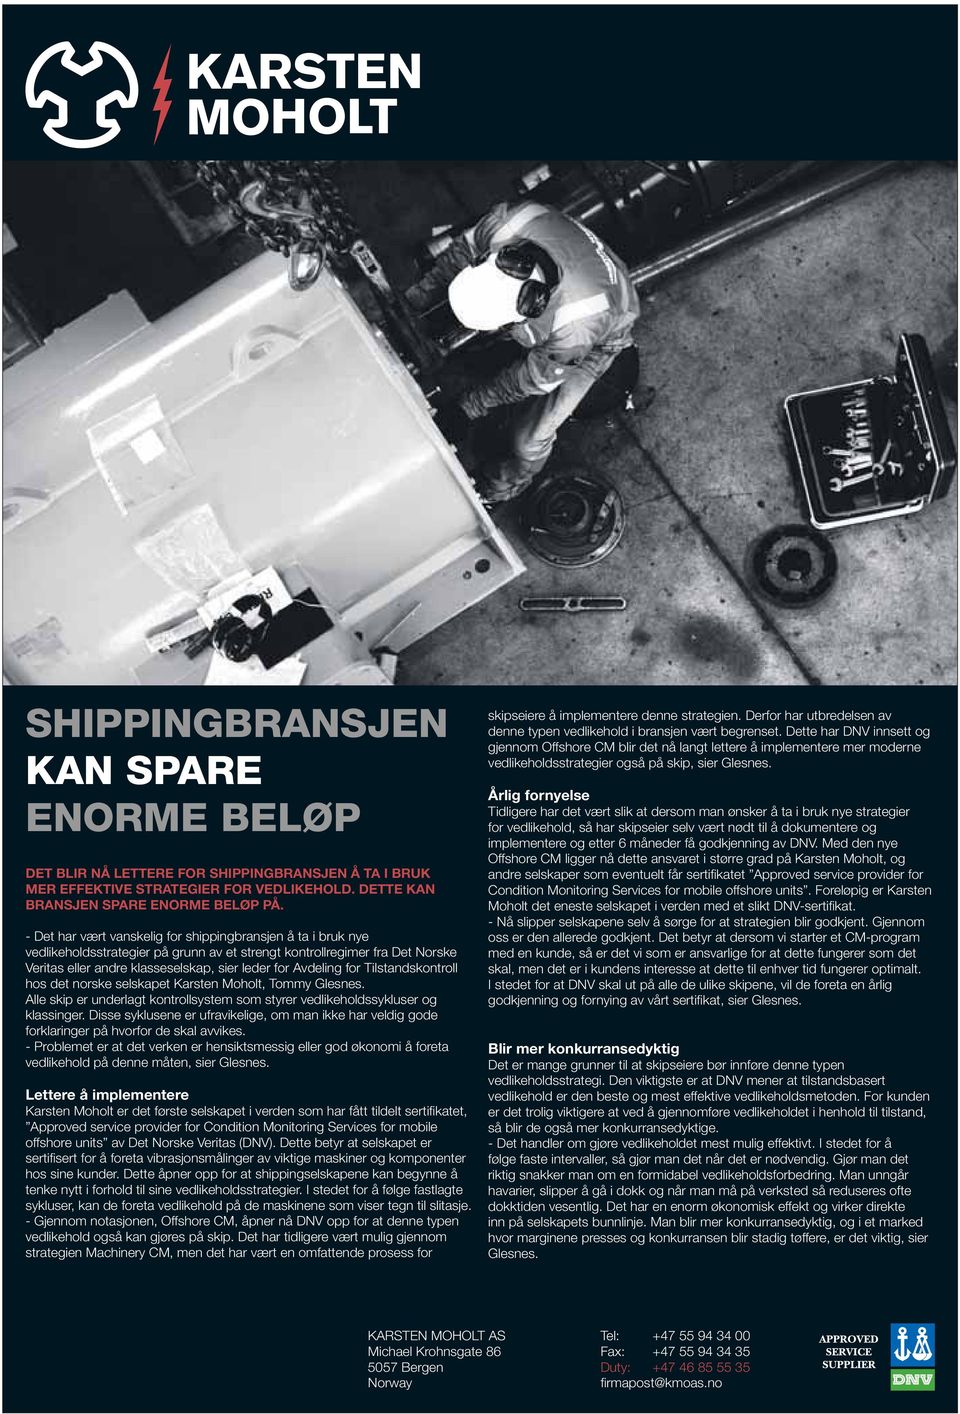 for Tilstandskontroll hos det norske selskapet Karsten Moholt, Tommy Glesnes. Alle skip er underlagt kontrollsystem som styrer vedlikeholdssykluser og klassinger.